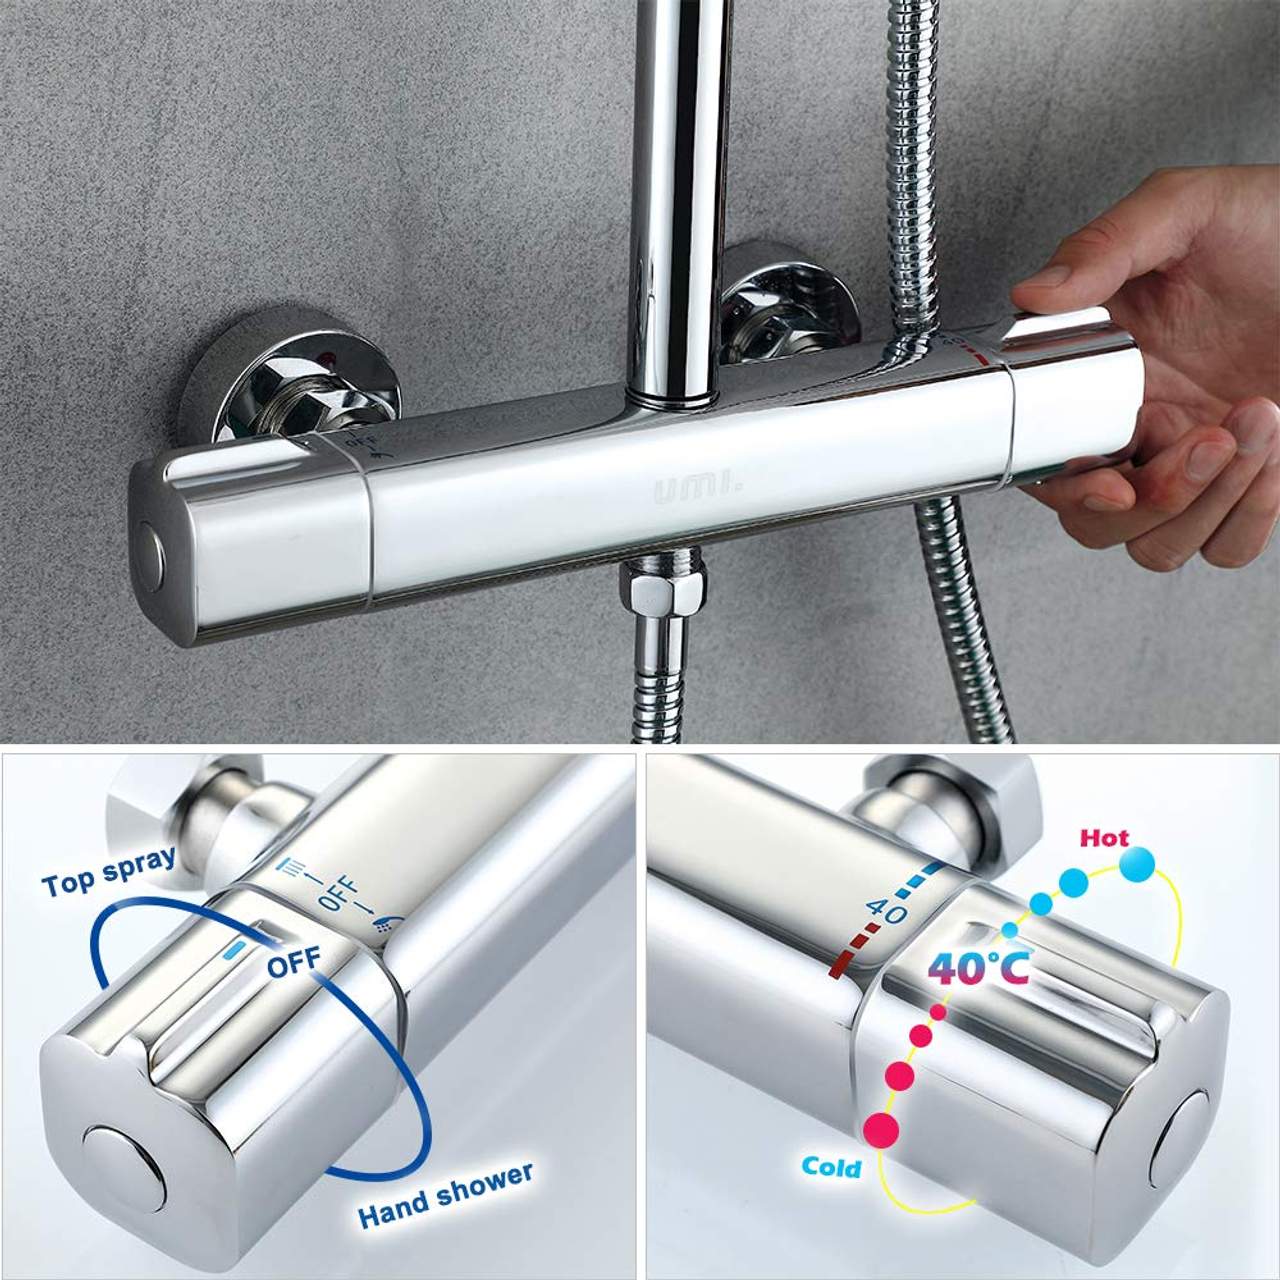 Umi Essentials Duschsystem mit Thermostat Regendusche Duschset Duscharmatur Dusche